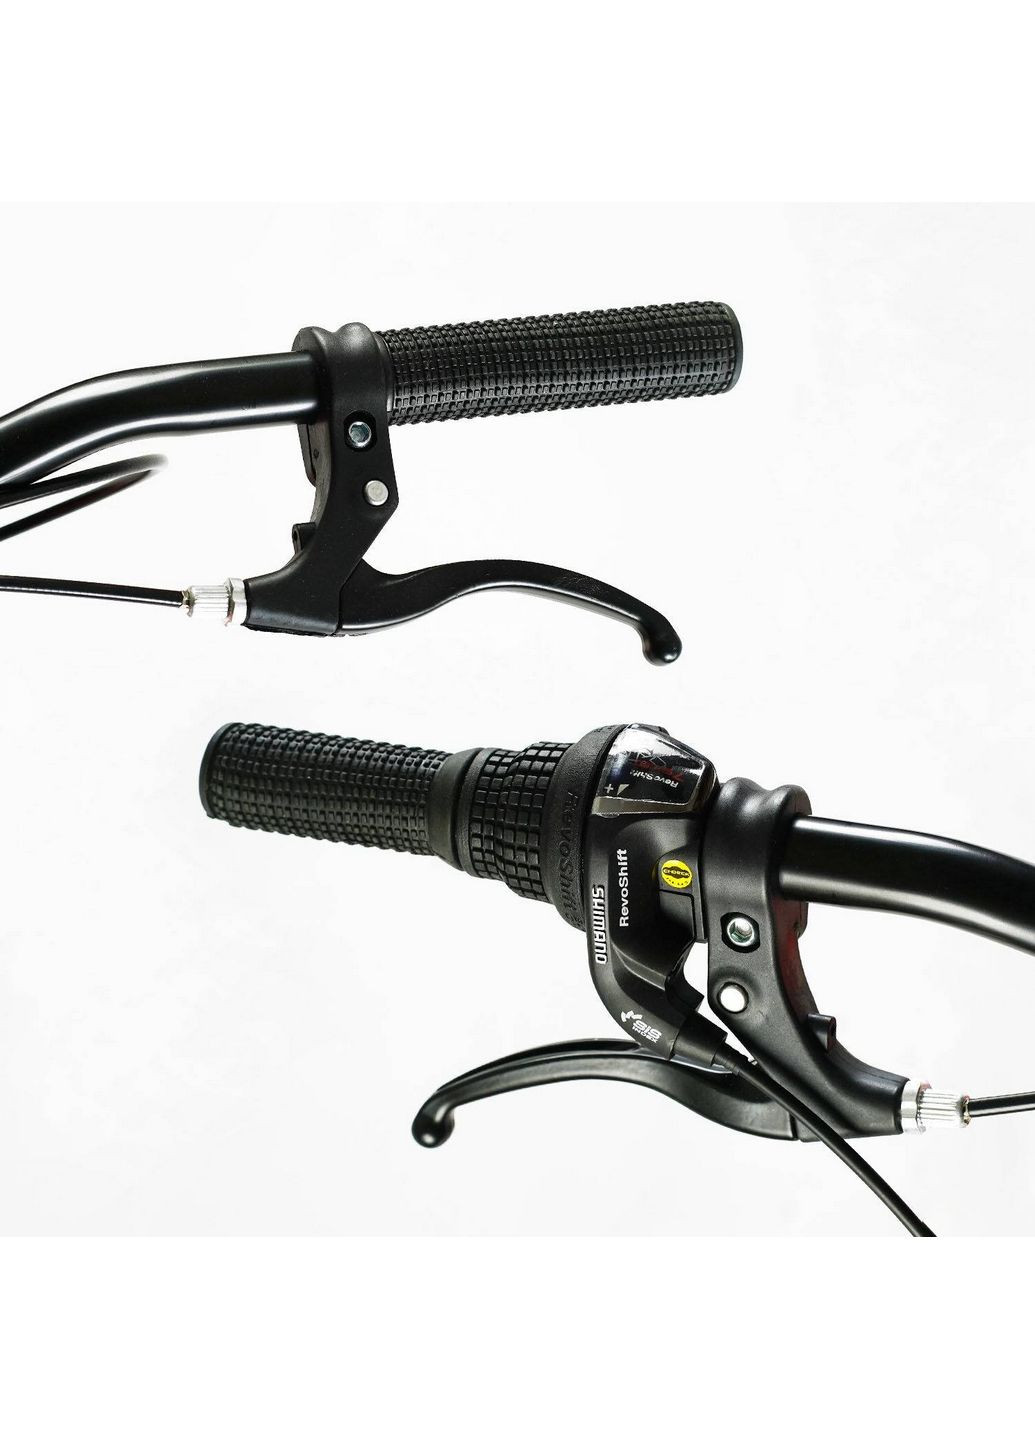 Велосипед спортивный "OPTIMA", 7 скоростей, алюминиевая рама, переключатели Shimano Corso (288185412)